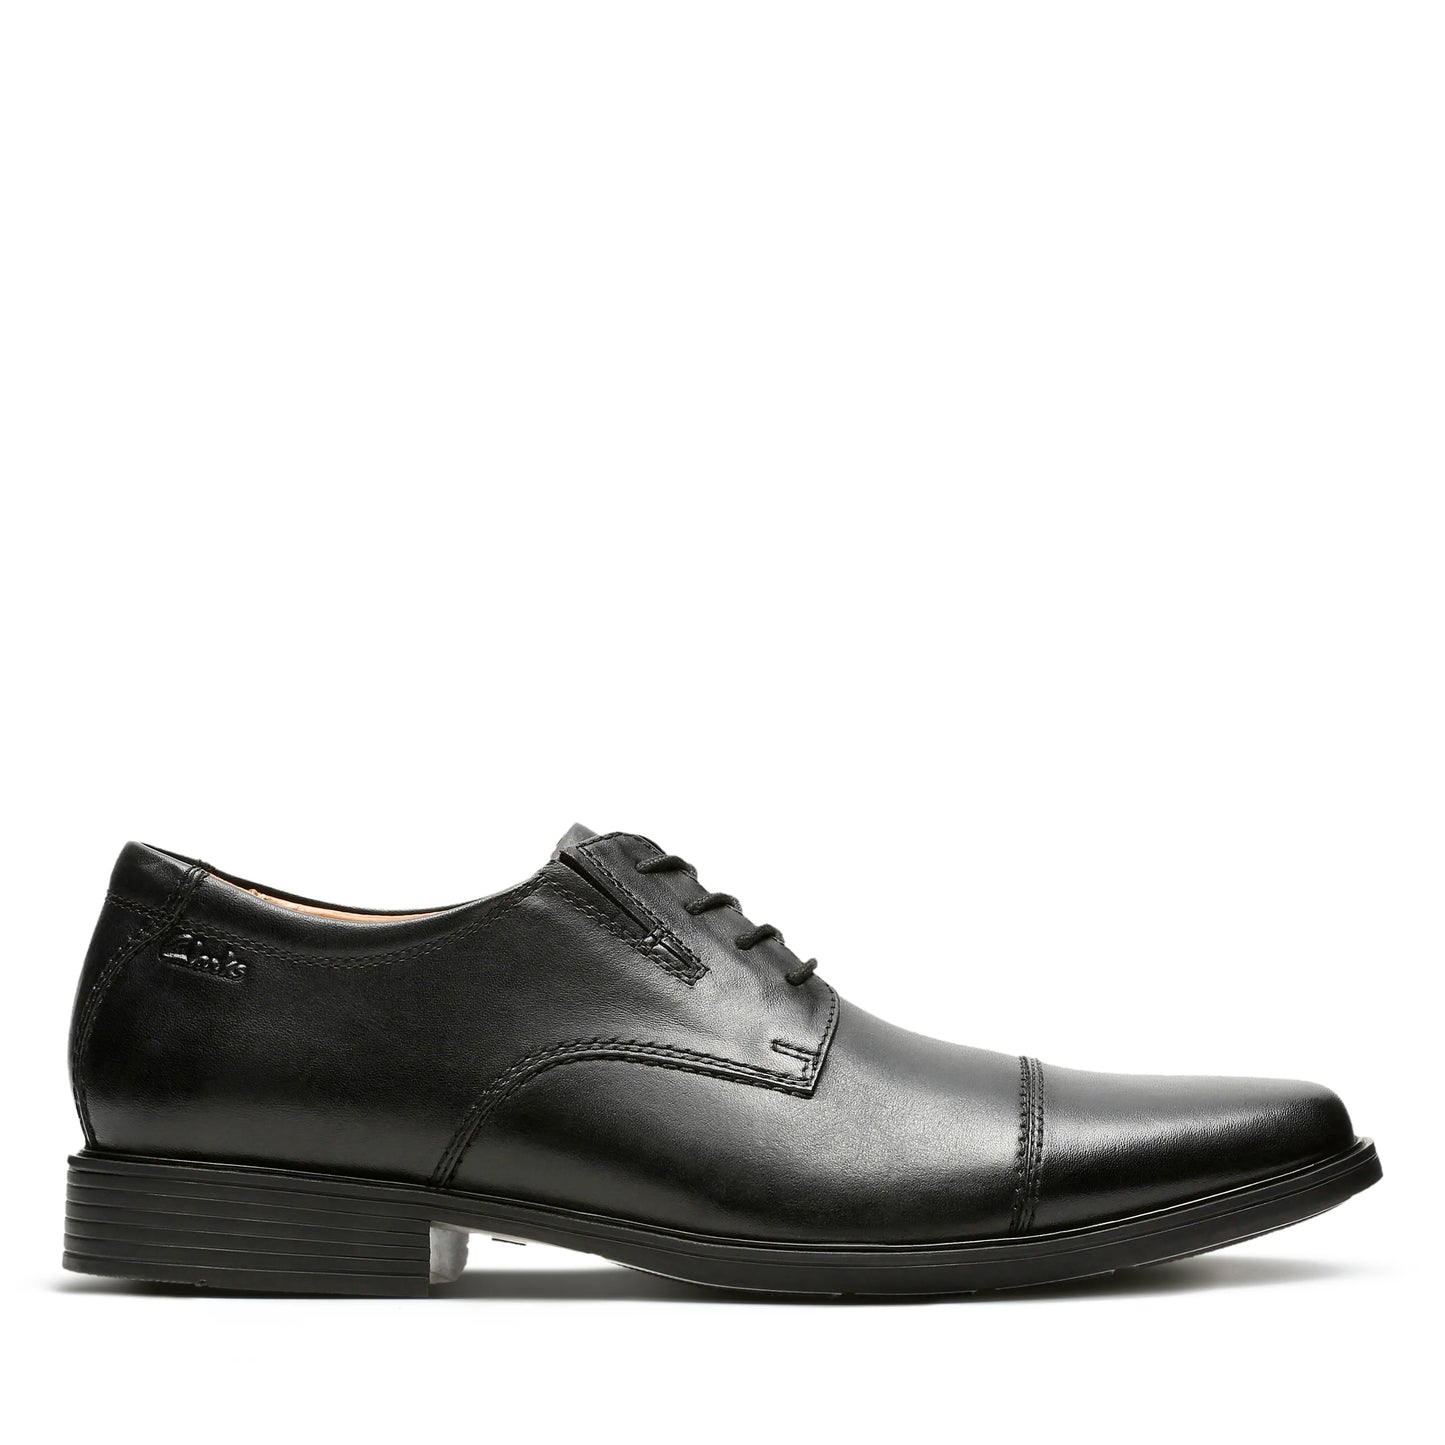 zapatos derby de la marca clarks modelo tilden cap black leather para hombre en color negro